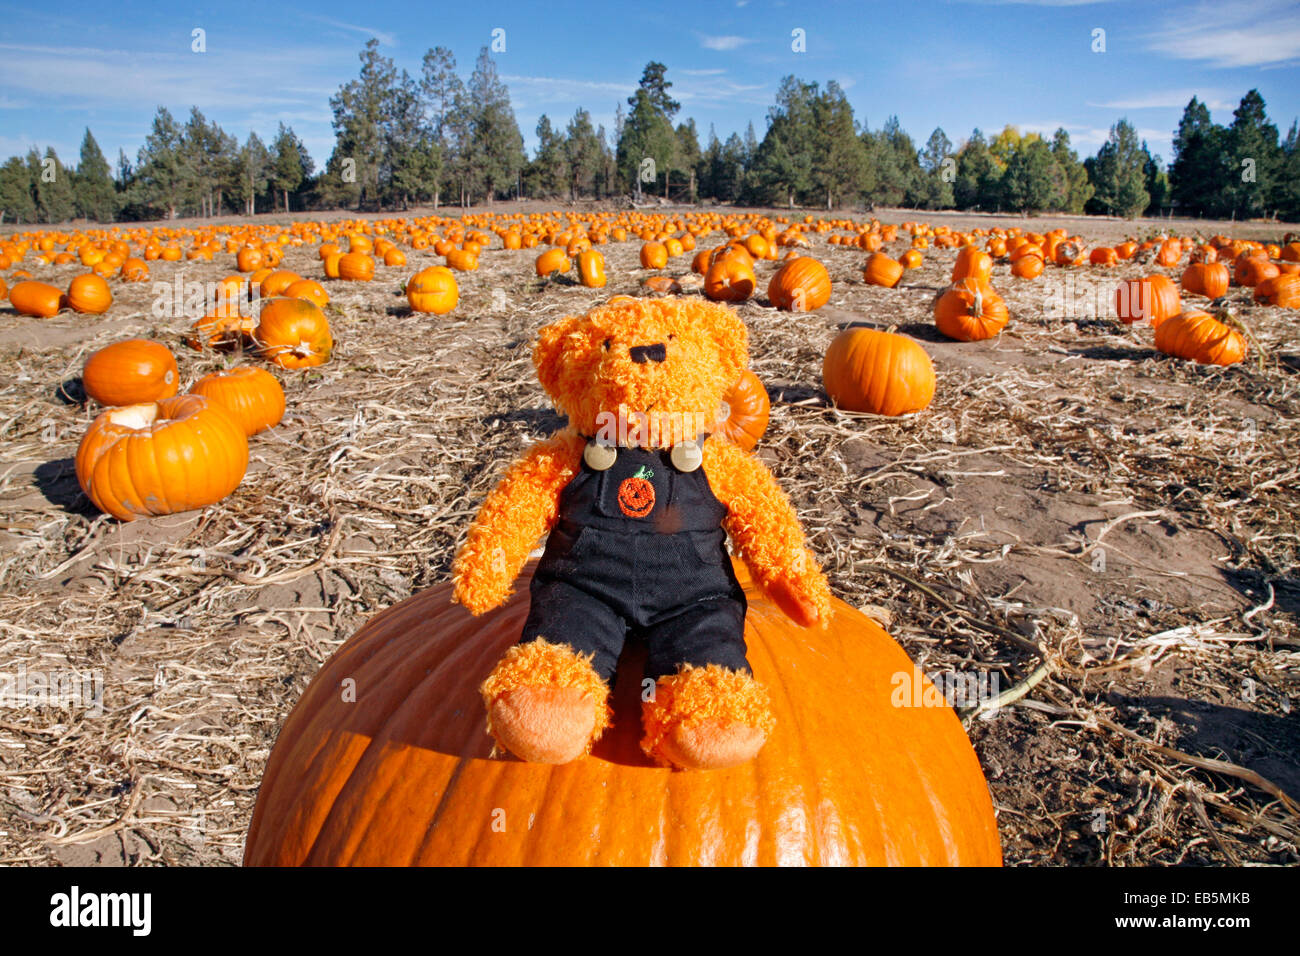 Un ours en peluche vêtu d'un costume d'halloween sur une citrouille dans un champ de citrouilles Banque D'Images